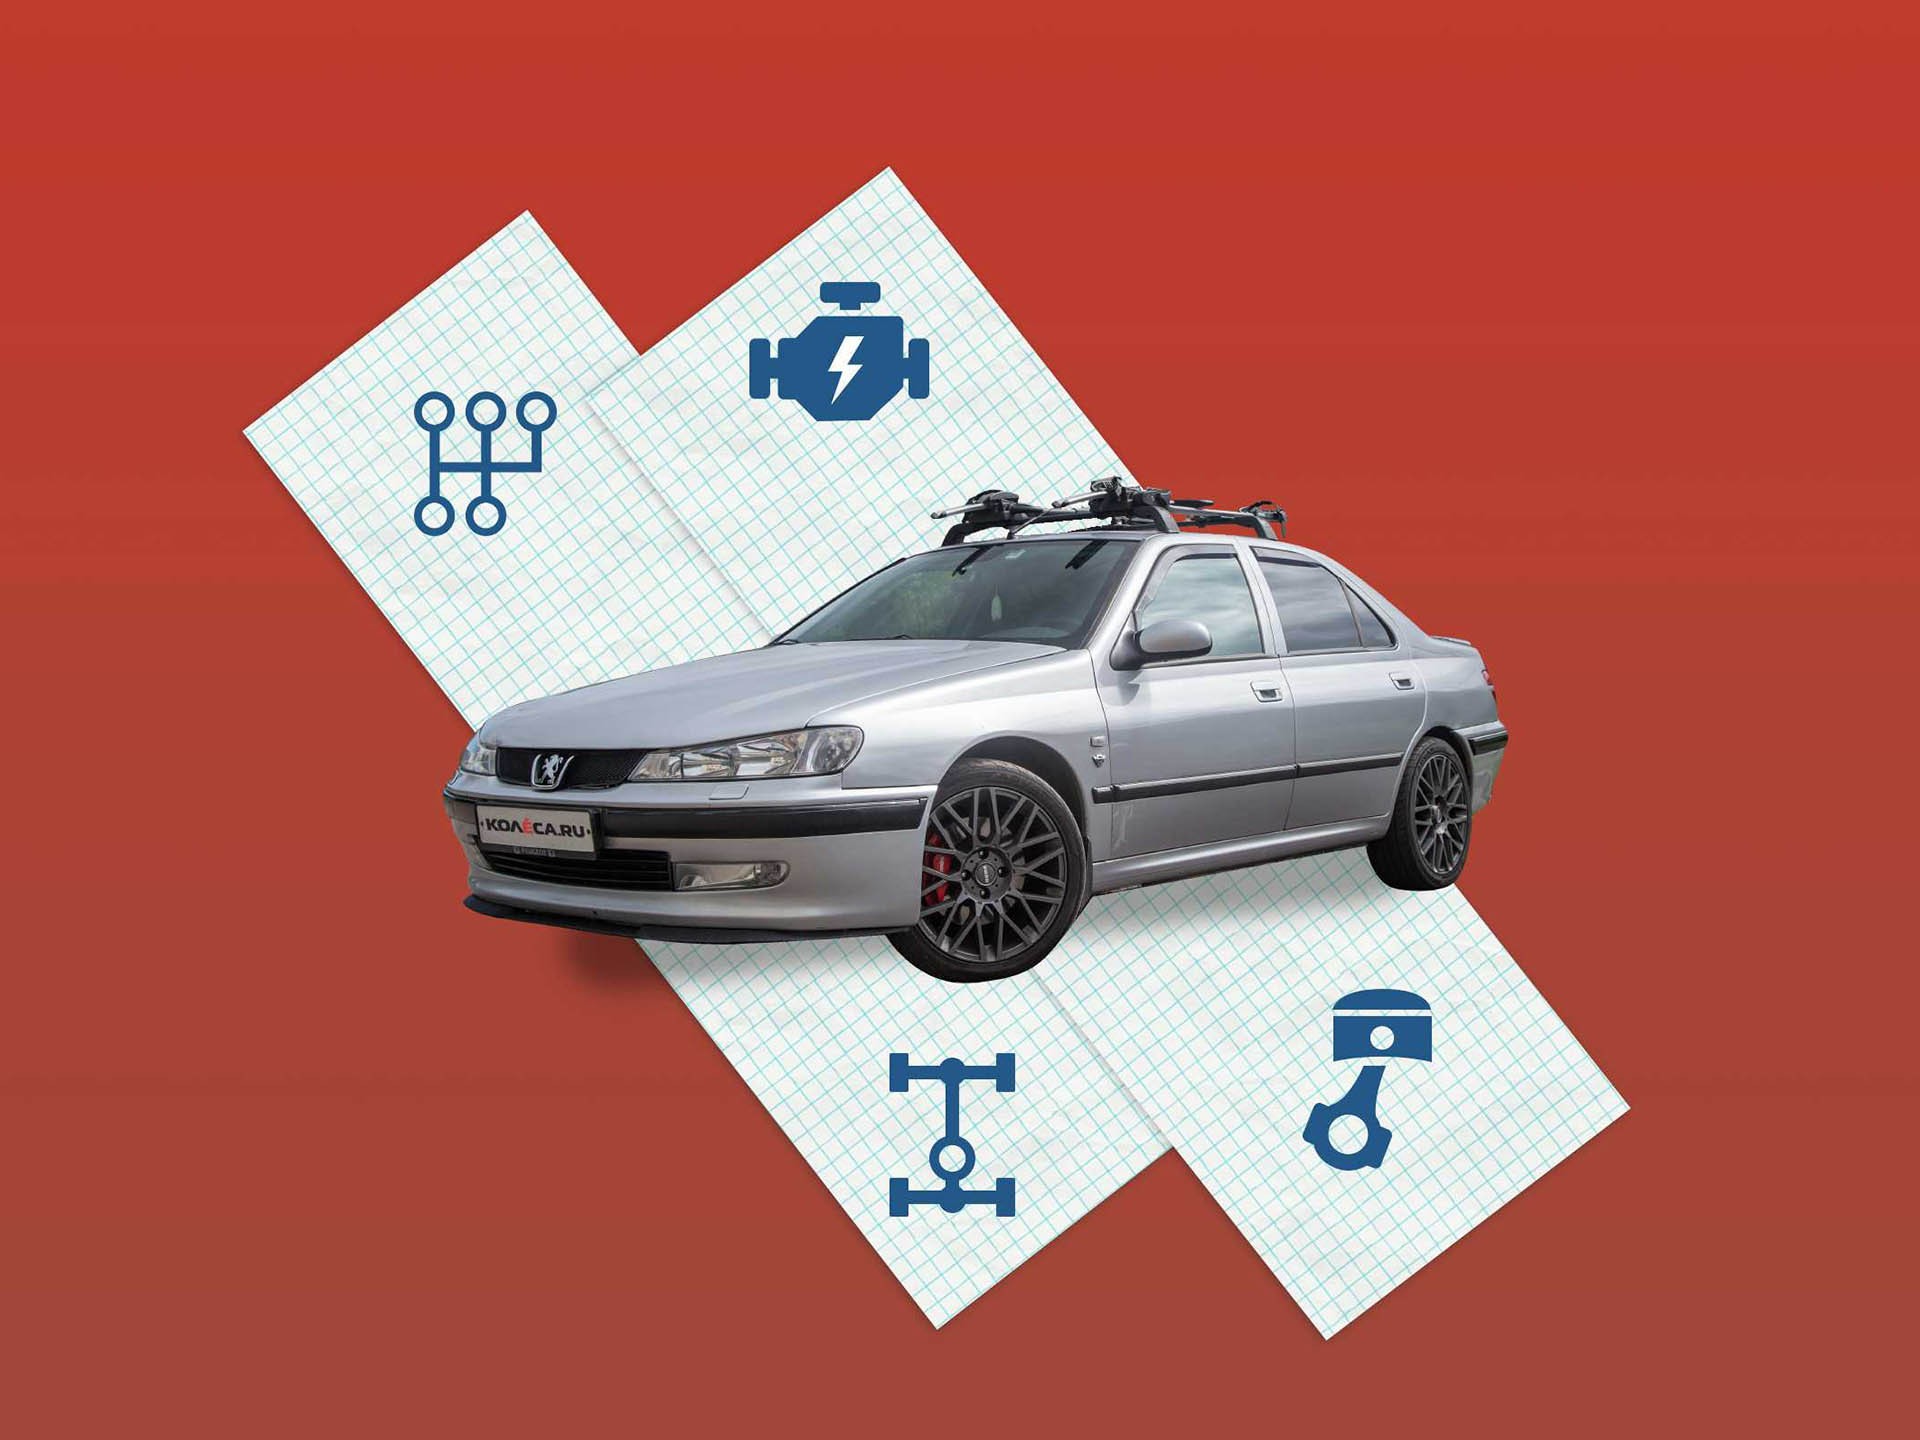 Peugeot 406 с пробегом: ходовая часть, трансмиссия, моторы - – автомобильный журнал